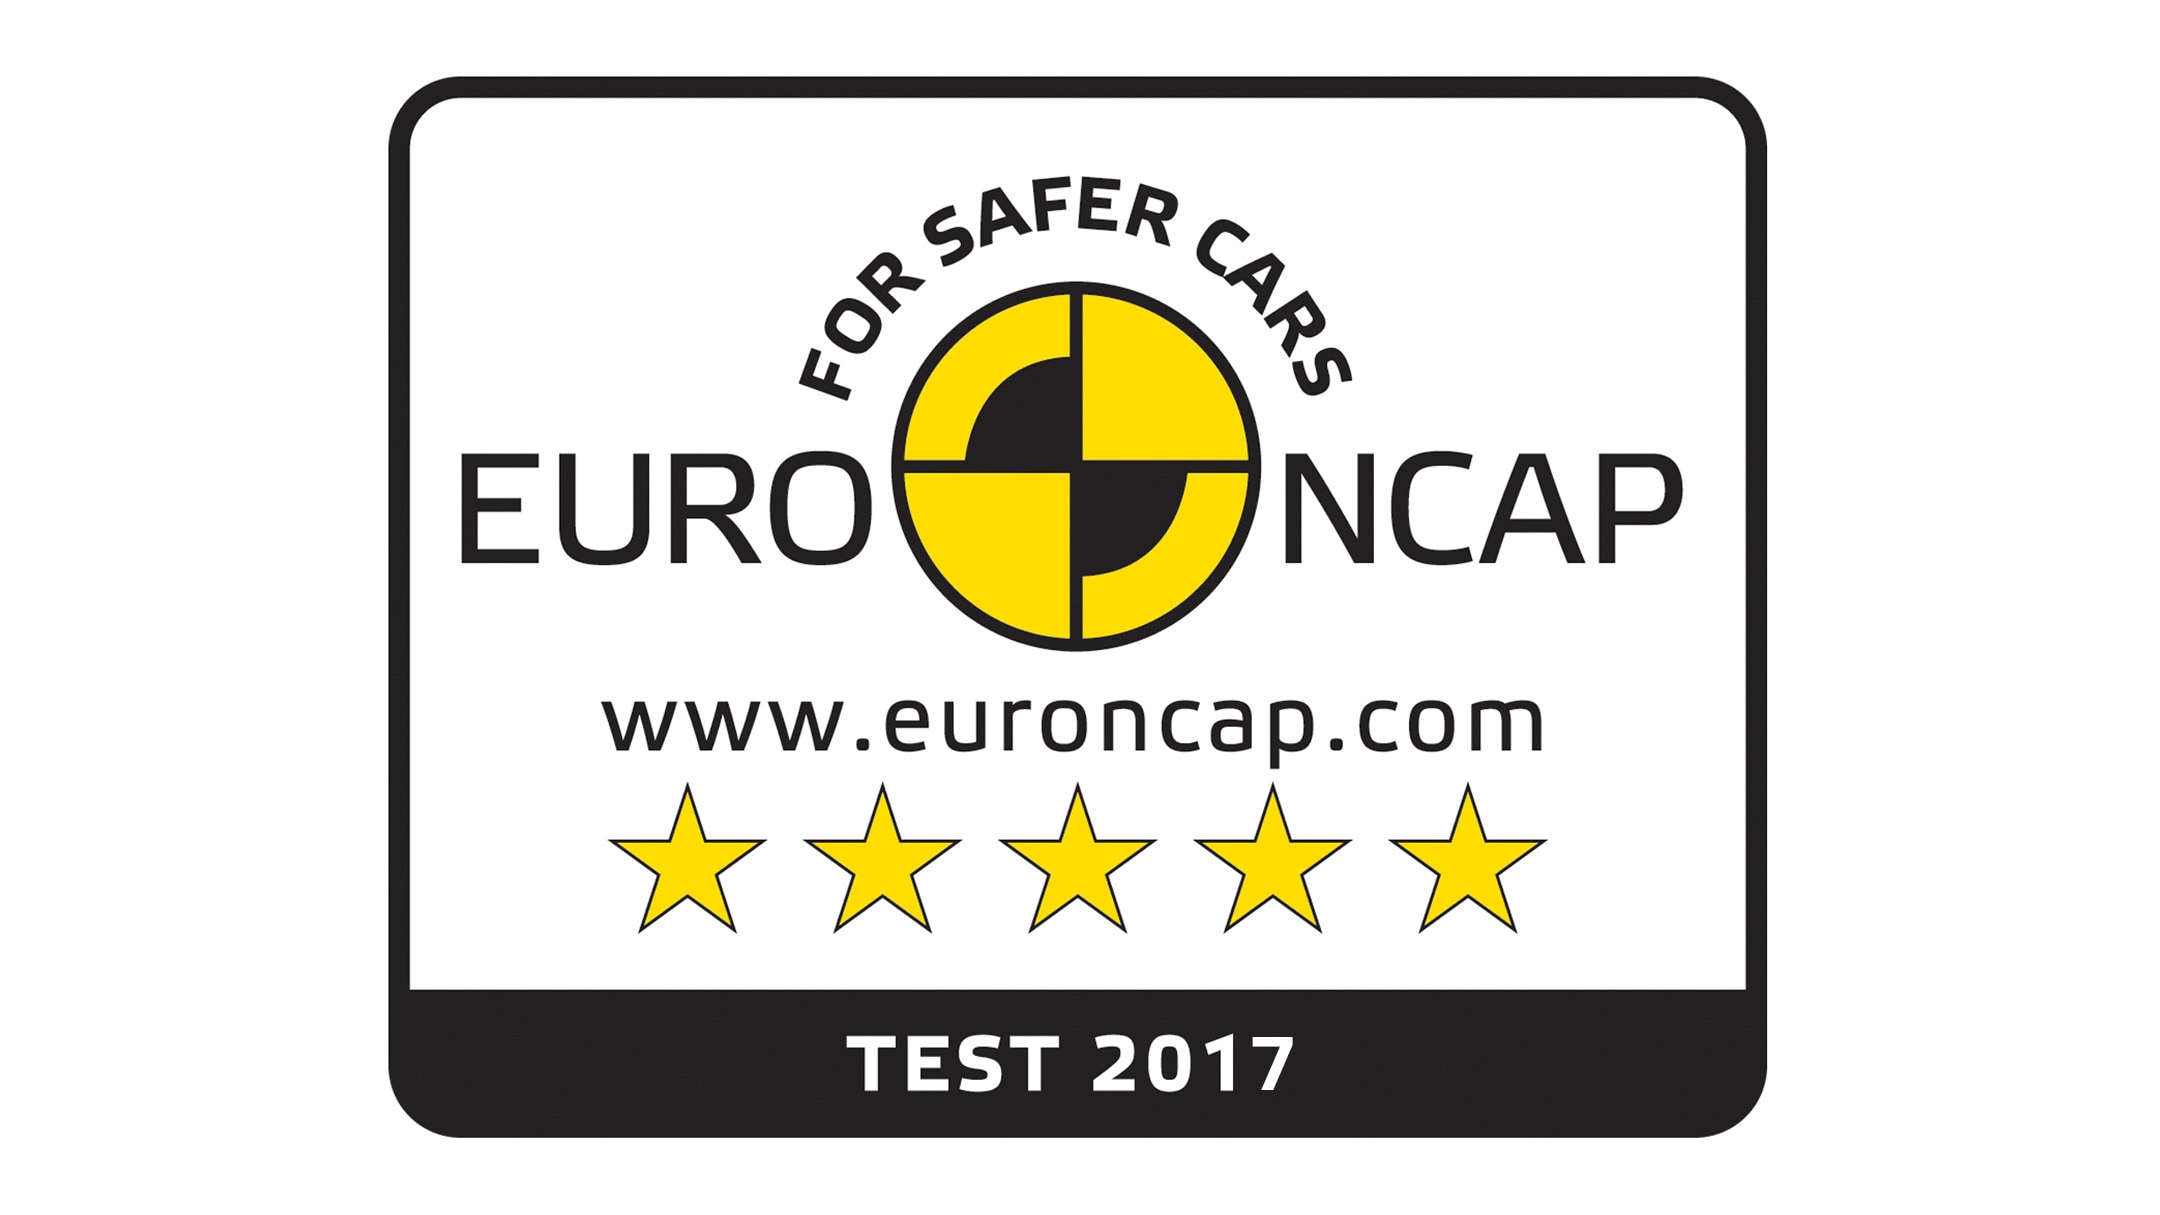 Pětihvězdičkové bezpečnostní logo Euro NCAP